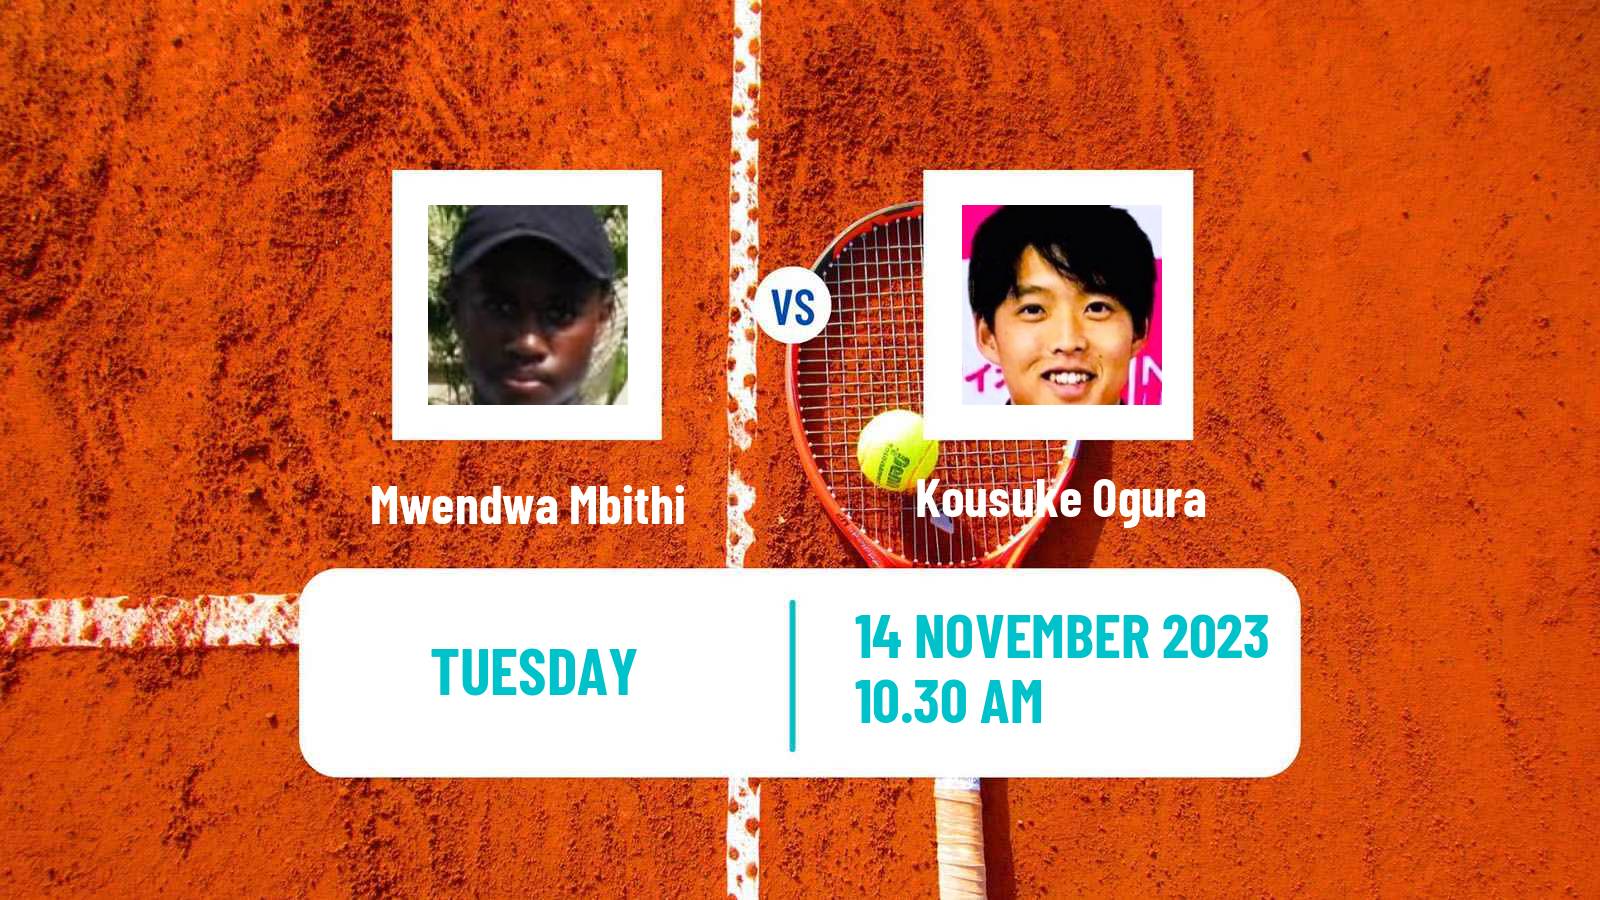 Tennis ITF M15 Santo Domingo 5 Men Mwendwa Mbithi - Kousuke Ogura